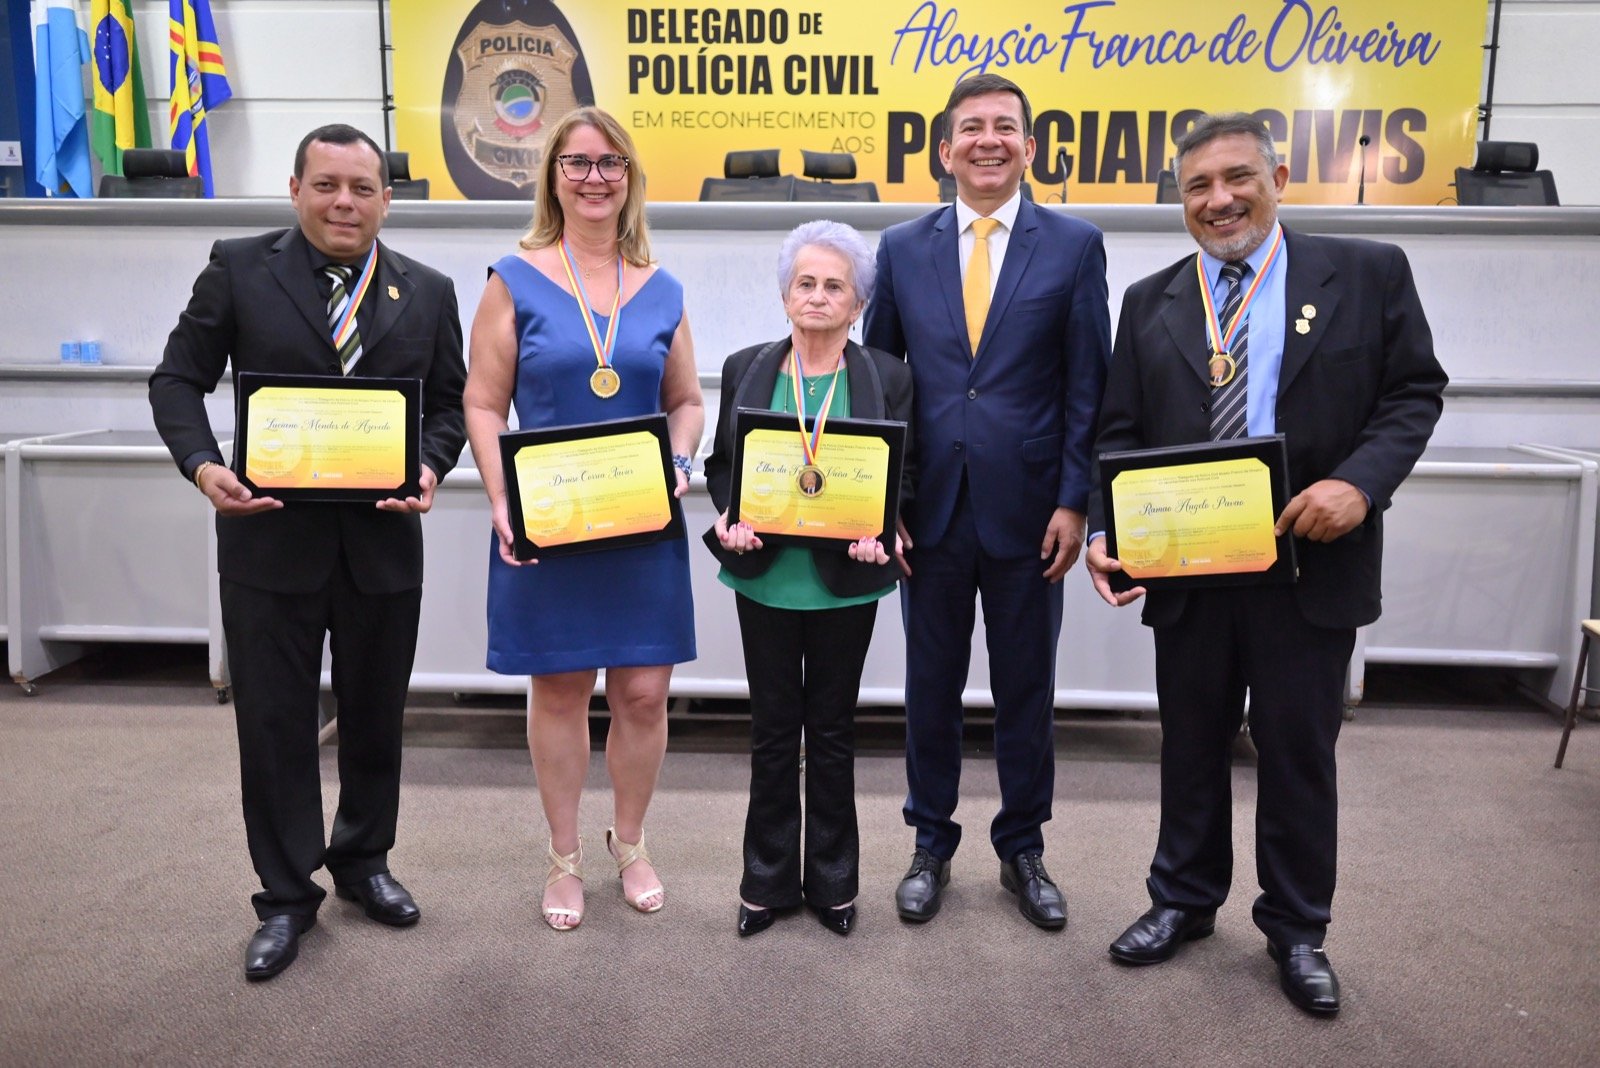 Celebração com homenagem a Policiais Civis marcam a noite de quarta-feira